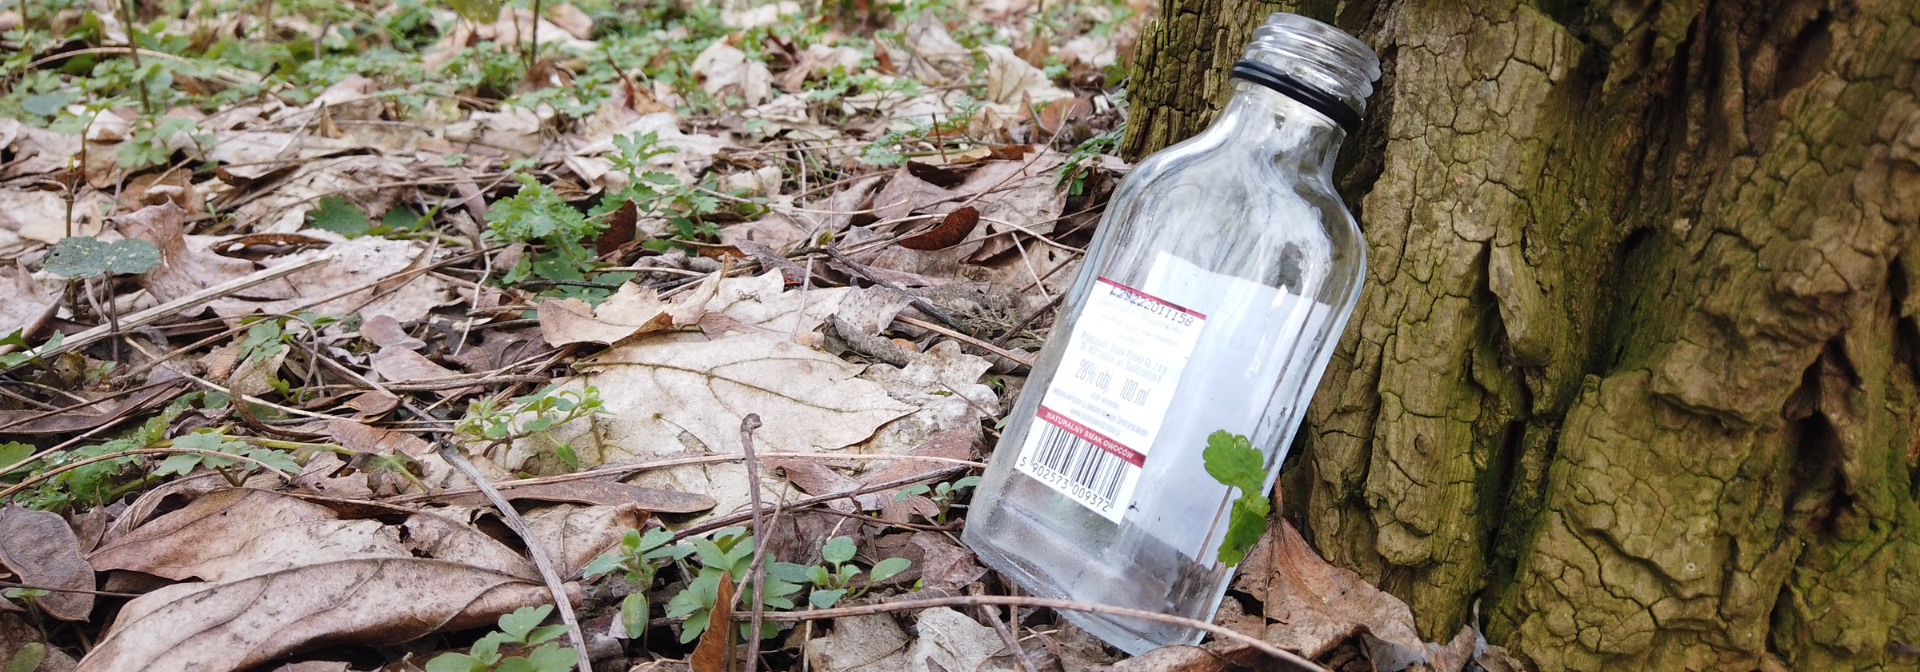 butelka w lesie, śmieci w lesie. Blog Szukam w lesie, Mikołaj Basiński